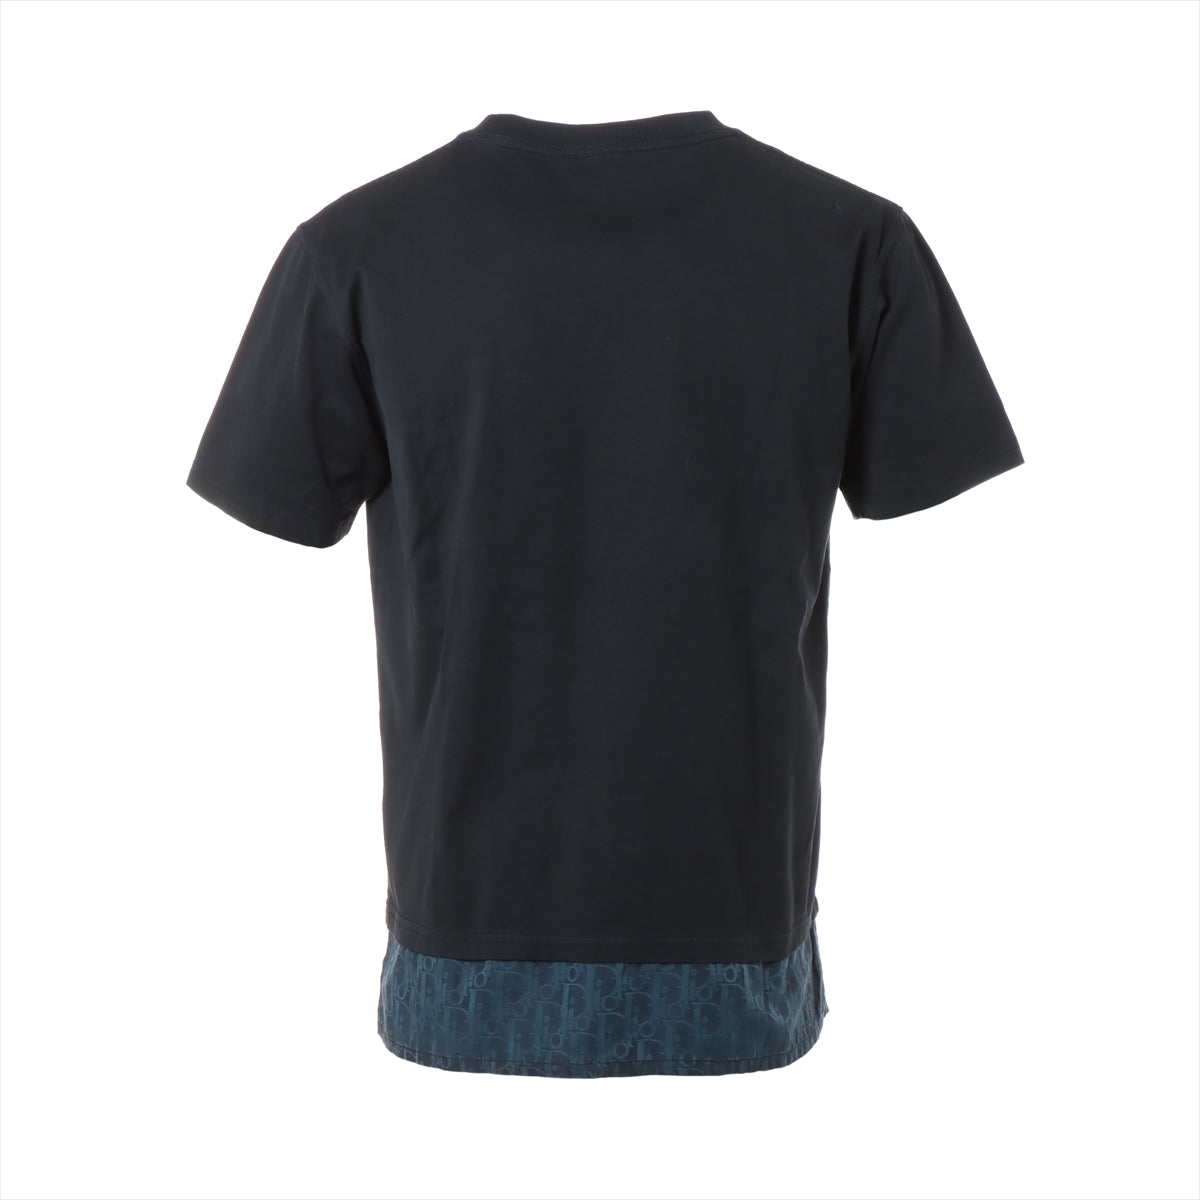 ディオール オブリーク 21SS コットン×シルク Tシャツ S メンズ ブラック×ネイビー  レイヤードオーバーサイズシャツ 113J632A0677